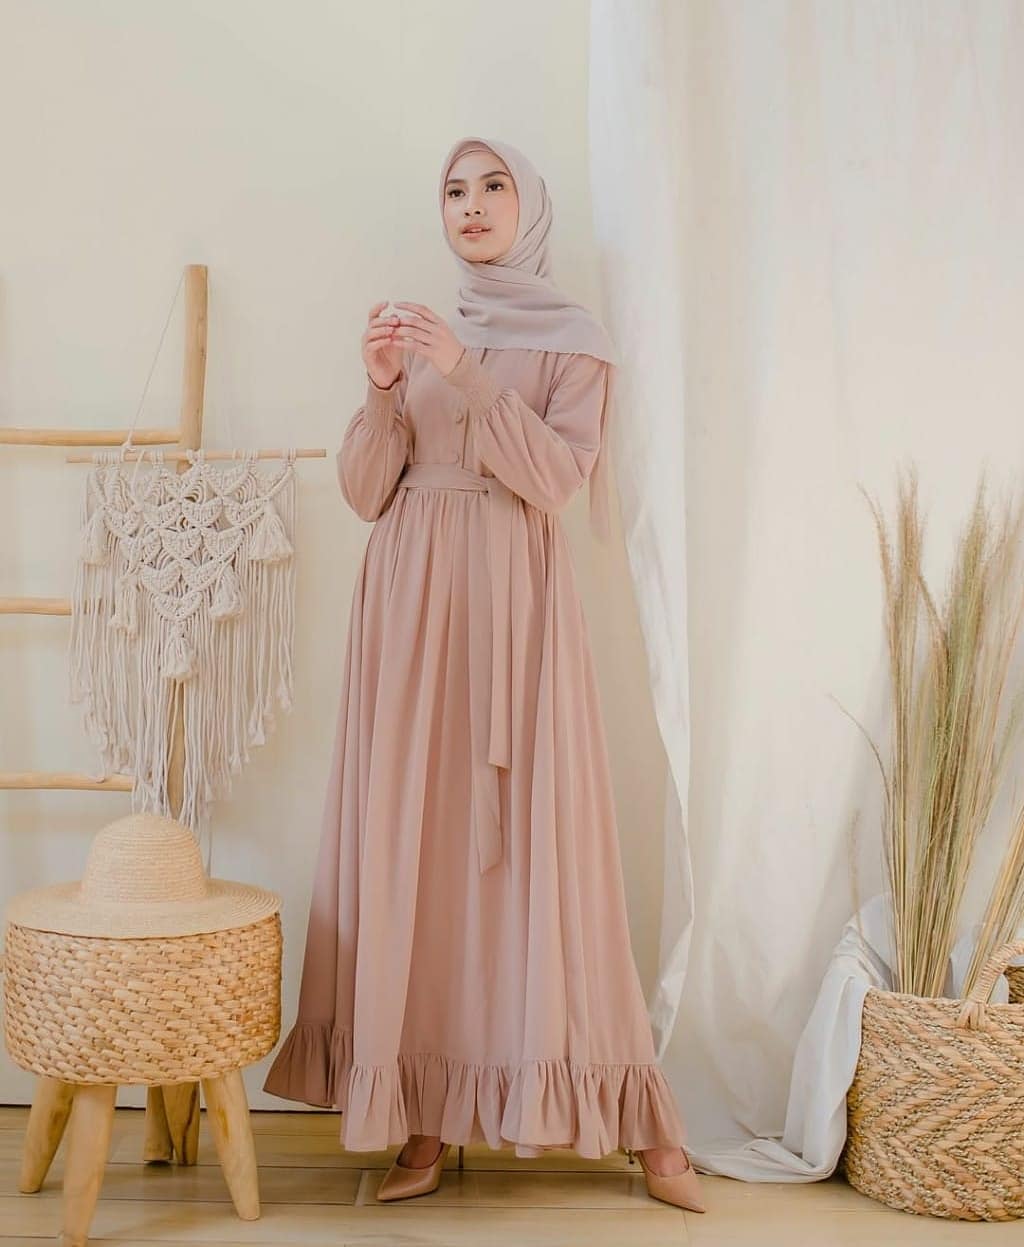 Baju Muslim Modern Gamis MARWAH DRESS BL Bahan Moscrepe Baju Gamis Terusan Wanita Paling Laris Dan Trendy Baju Panjang Polos Muslim Dress Pesta Terbaru Maxi Muslimah Termurah Pakaian Modis Simple Casual Terbaru 2019